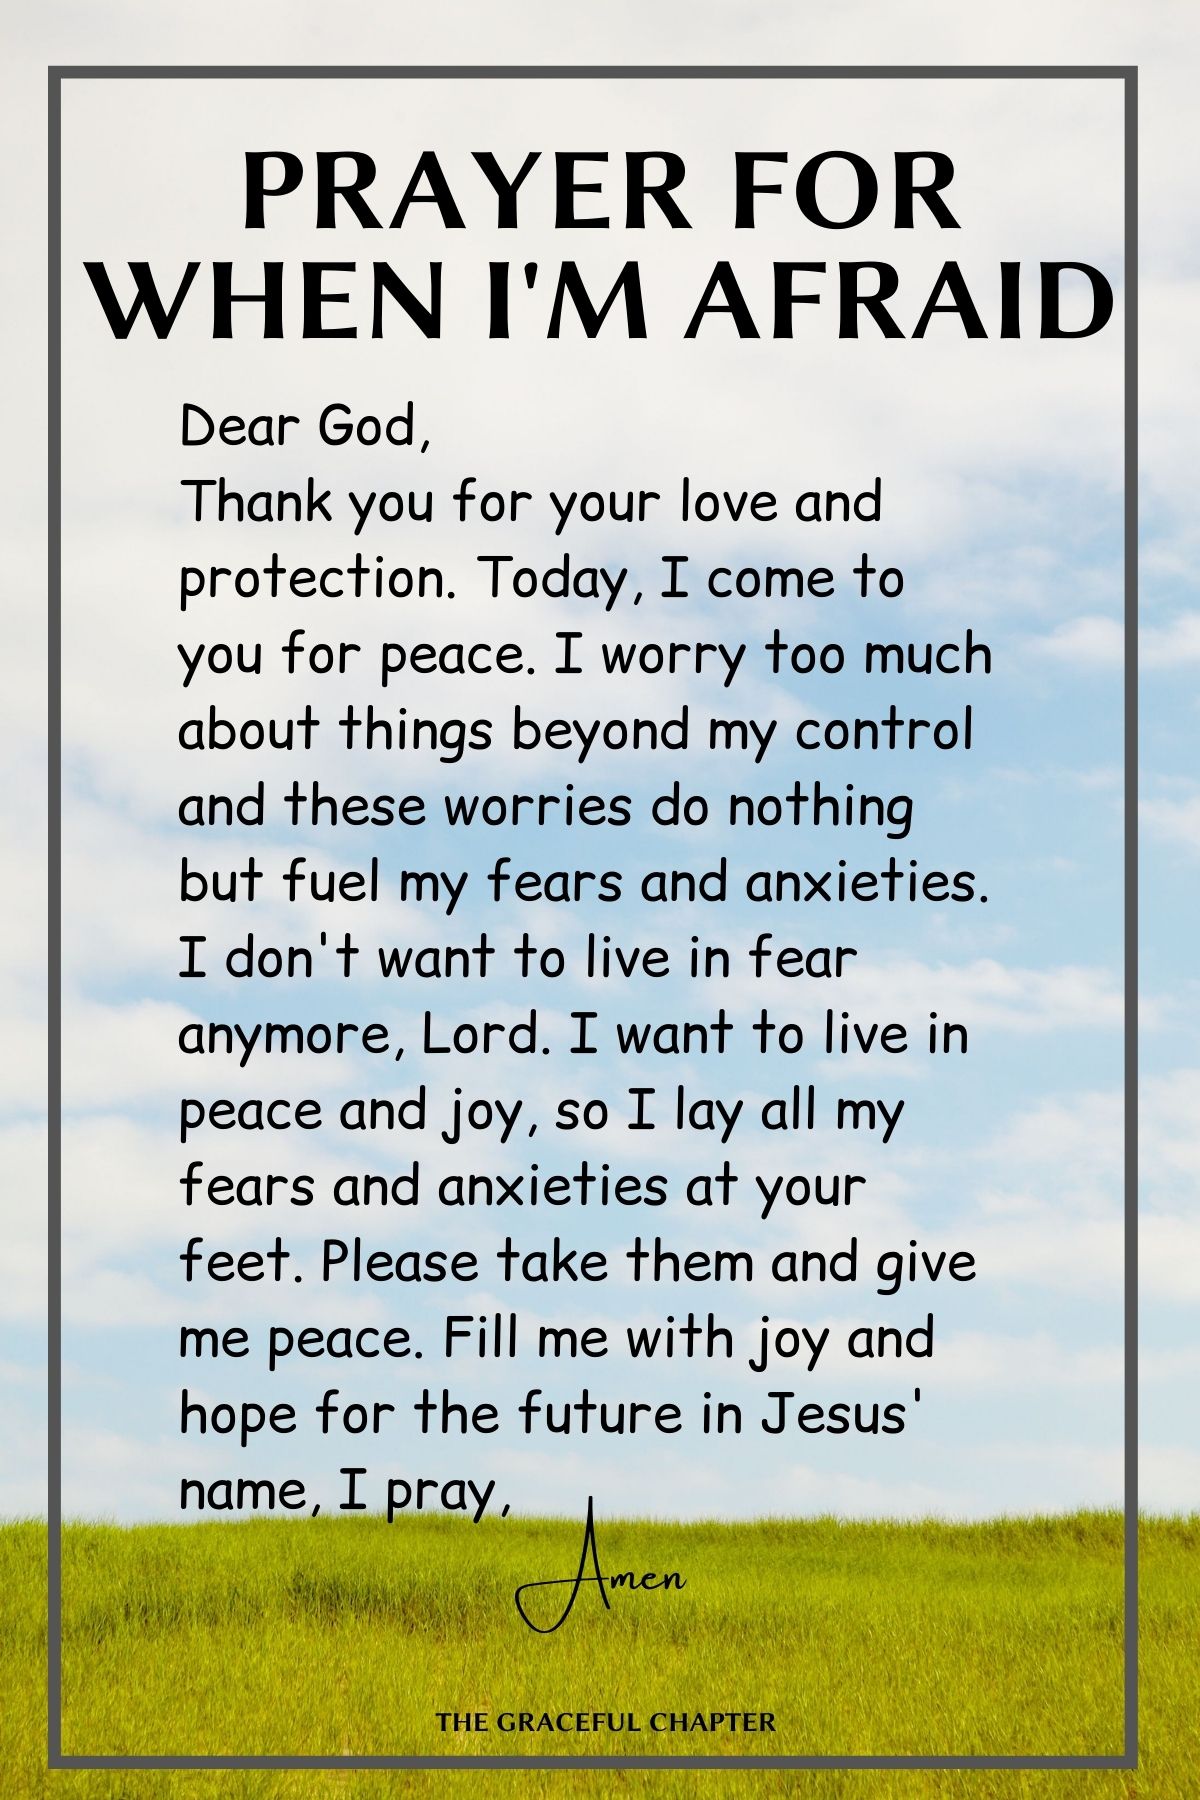 Prayer for when I'm afraid